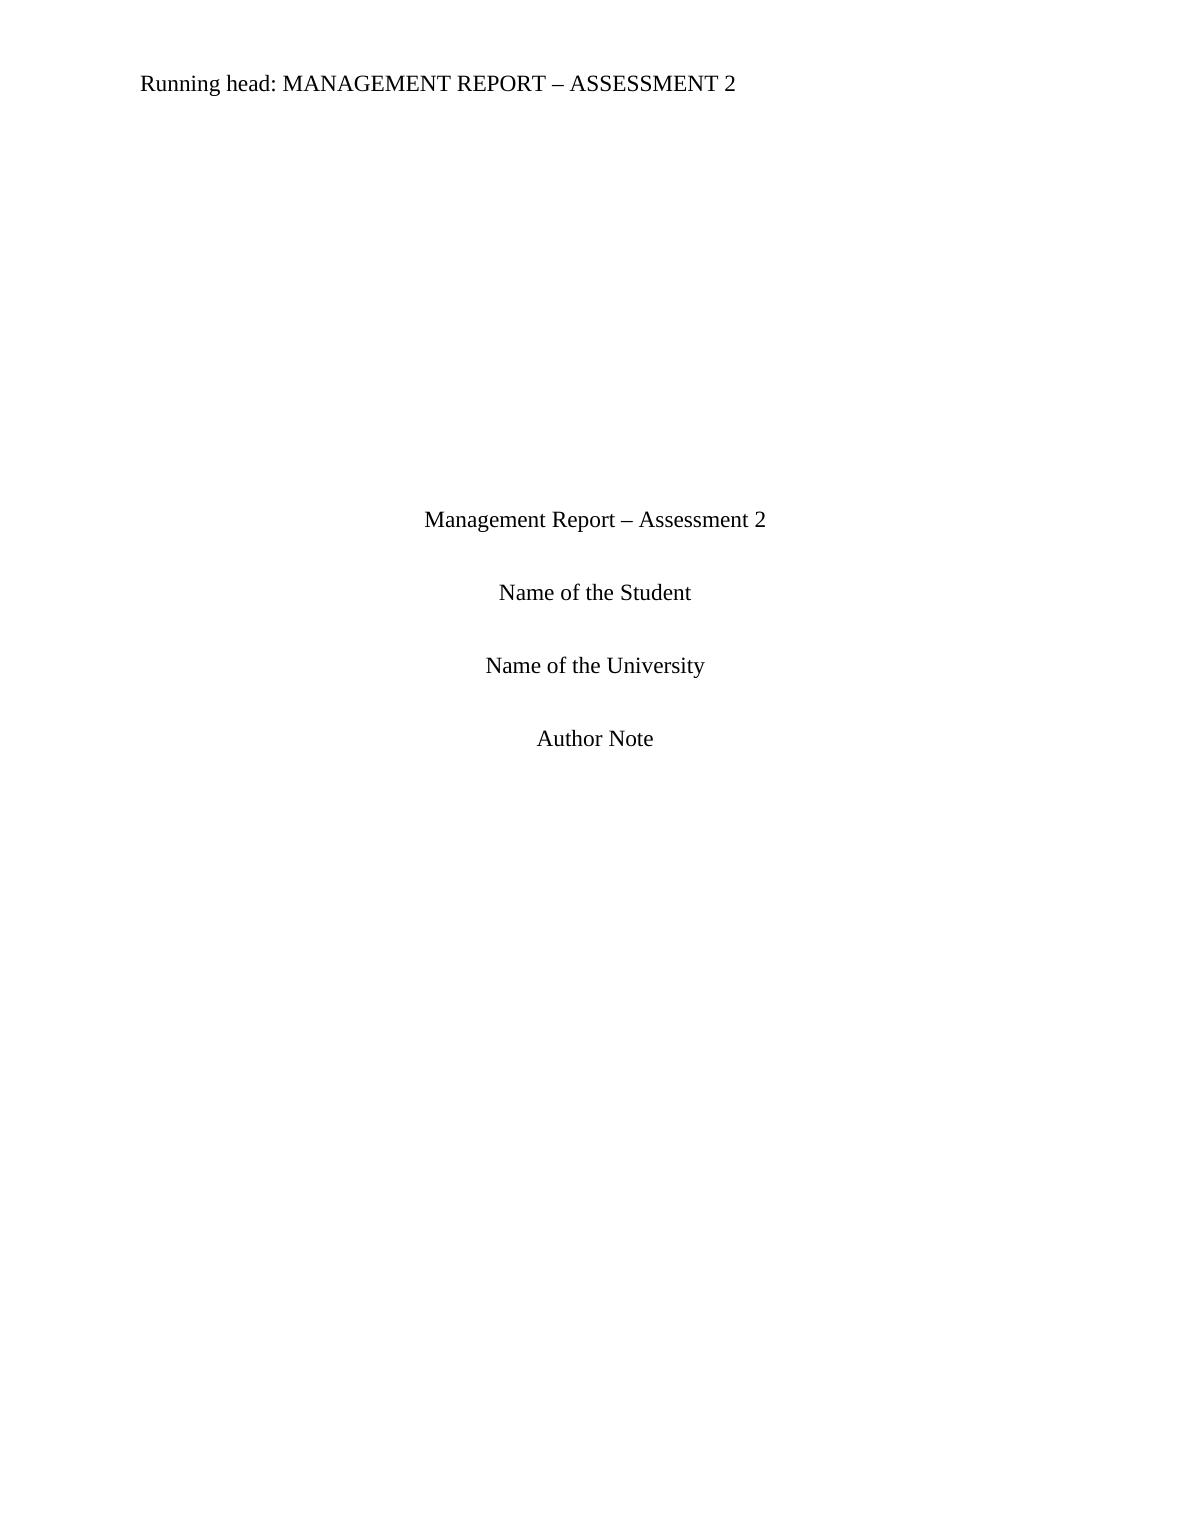 Assignment | Assessment Management Report_1